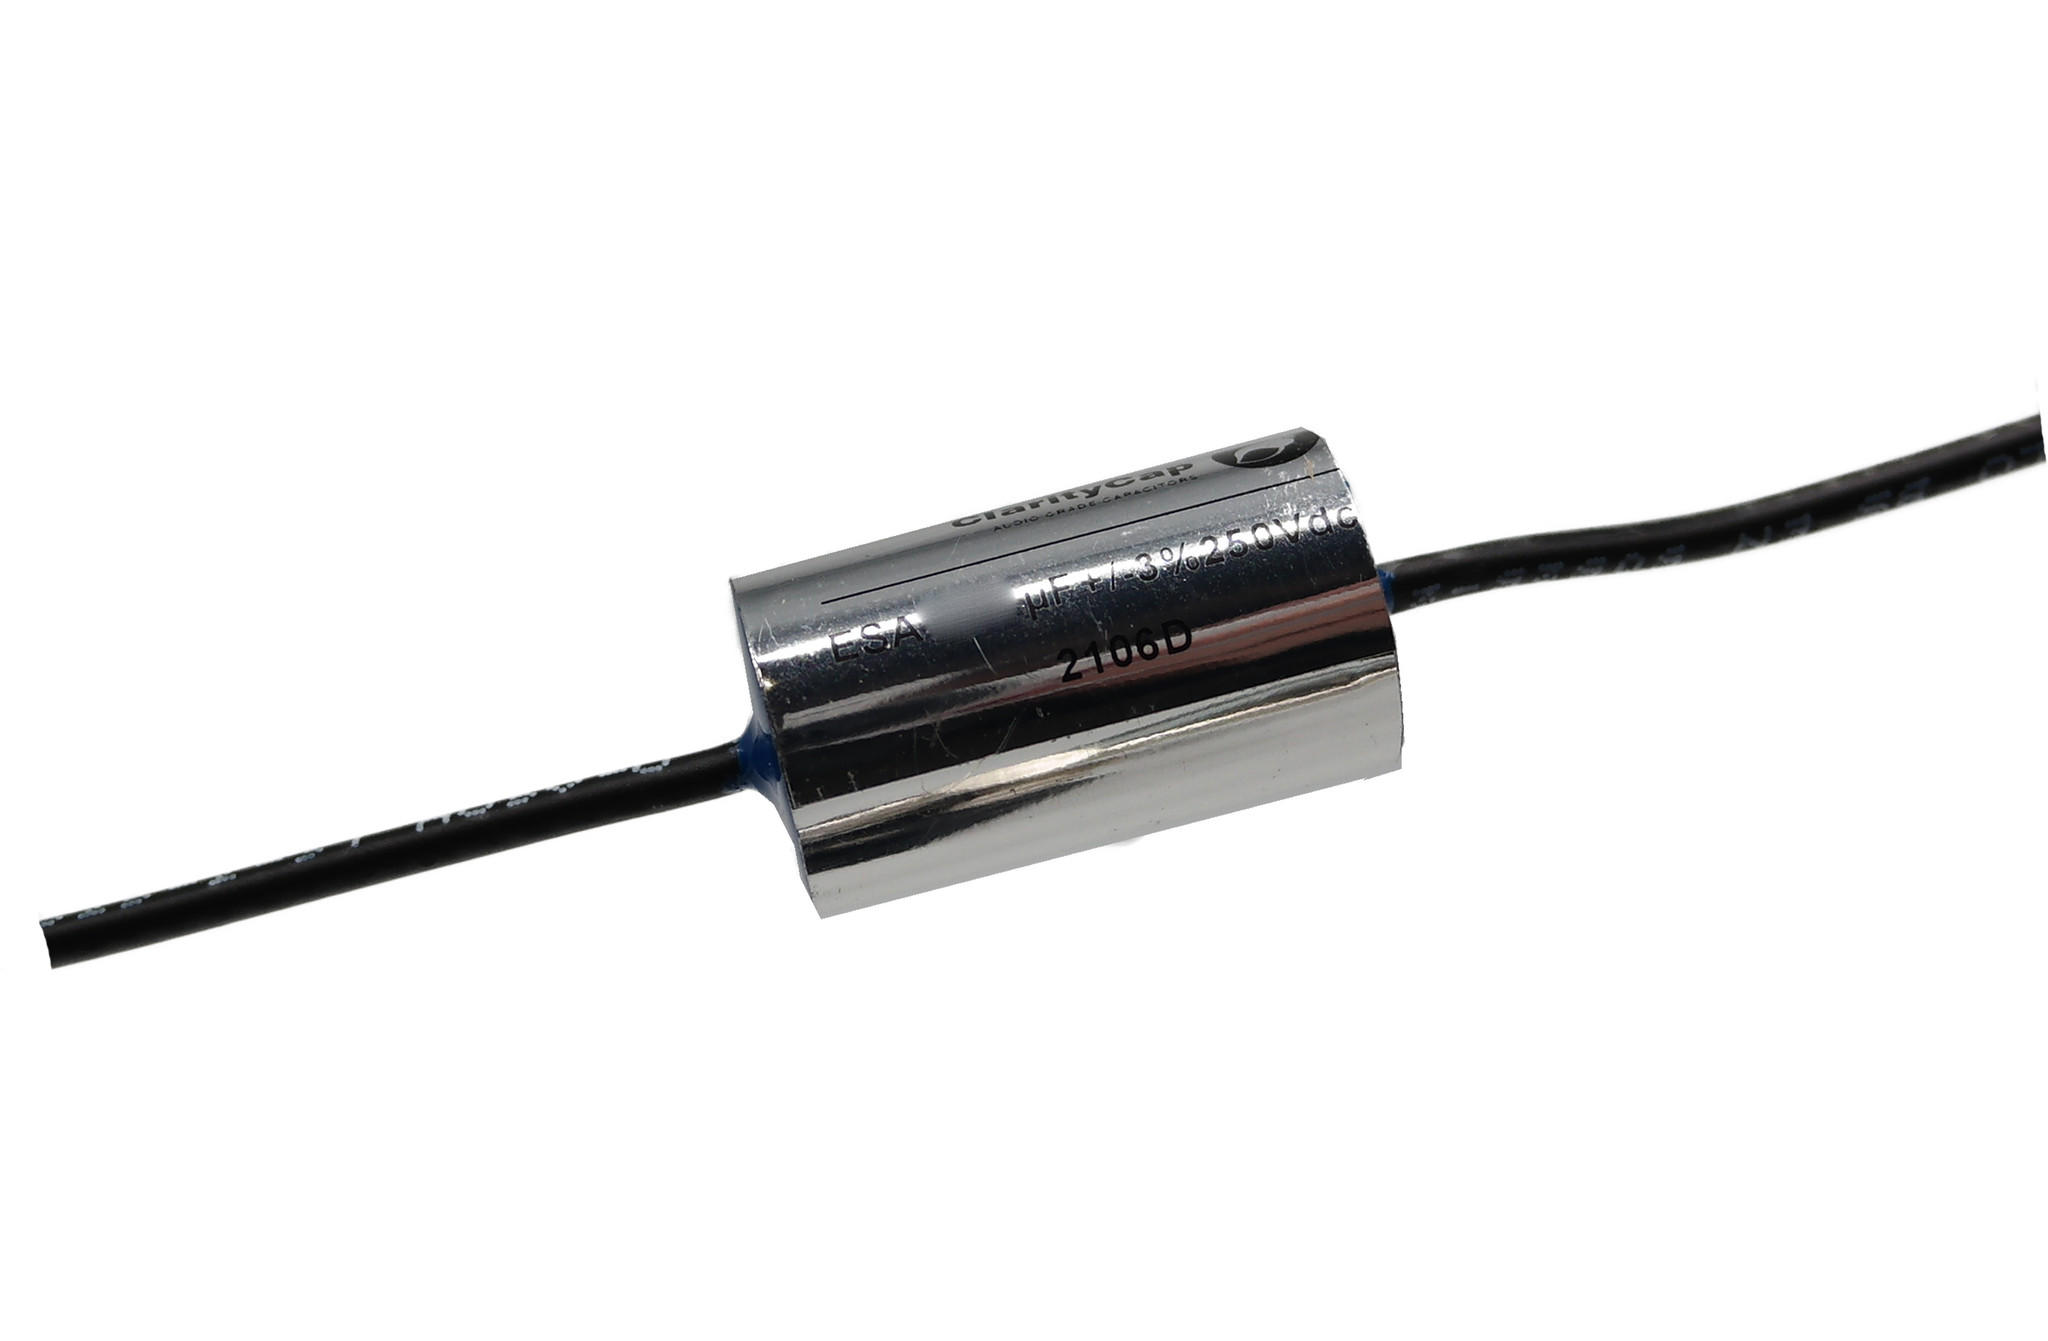 Condensatoare - Condensator film ClarityCap ESA2u2H250Vdc | 2.2 µF | 3% | 250 V, audioclub.ro